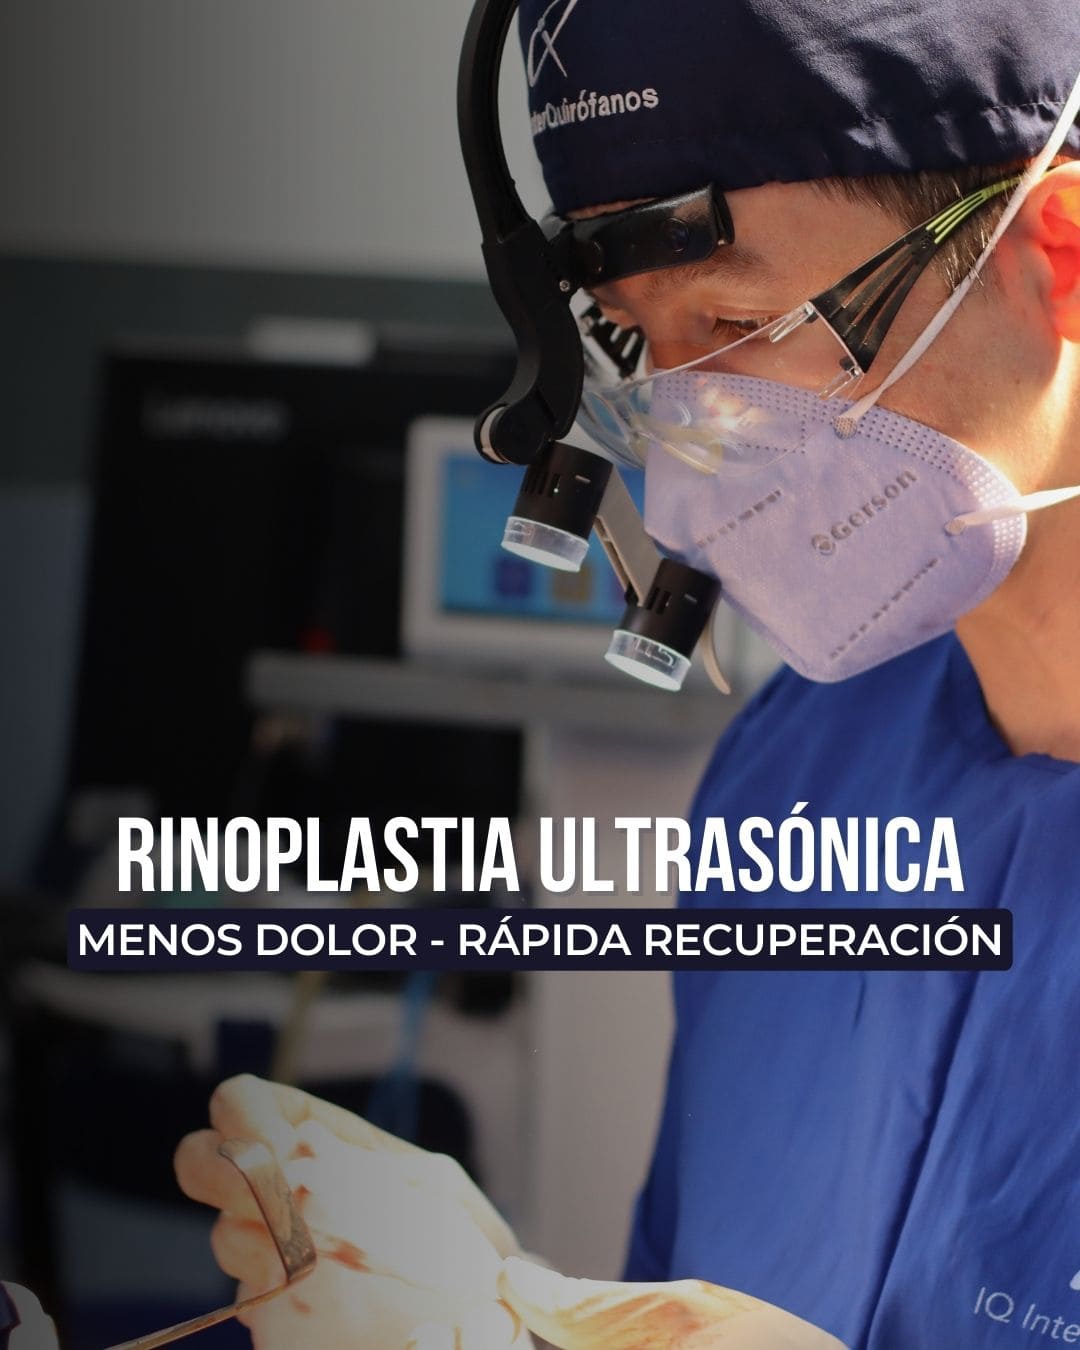 Dr. David Delgado - Cirujano Plástico en Medellín